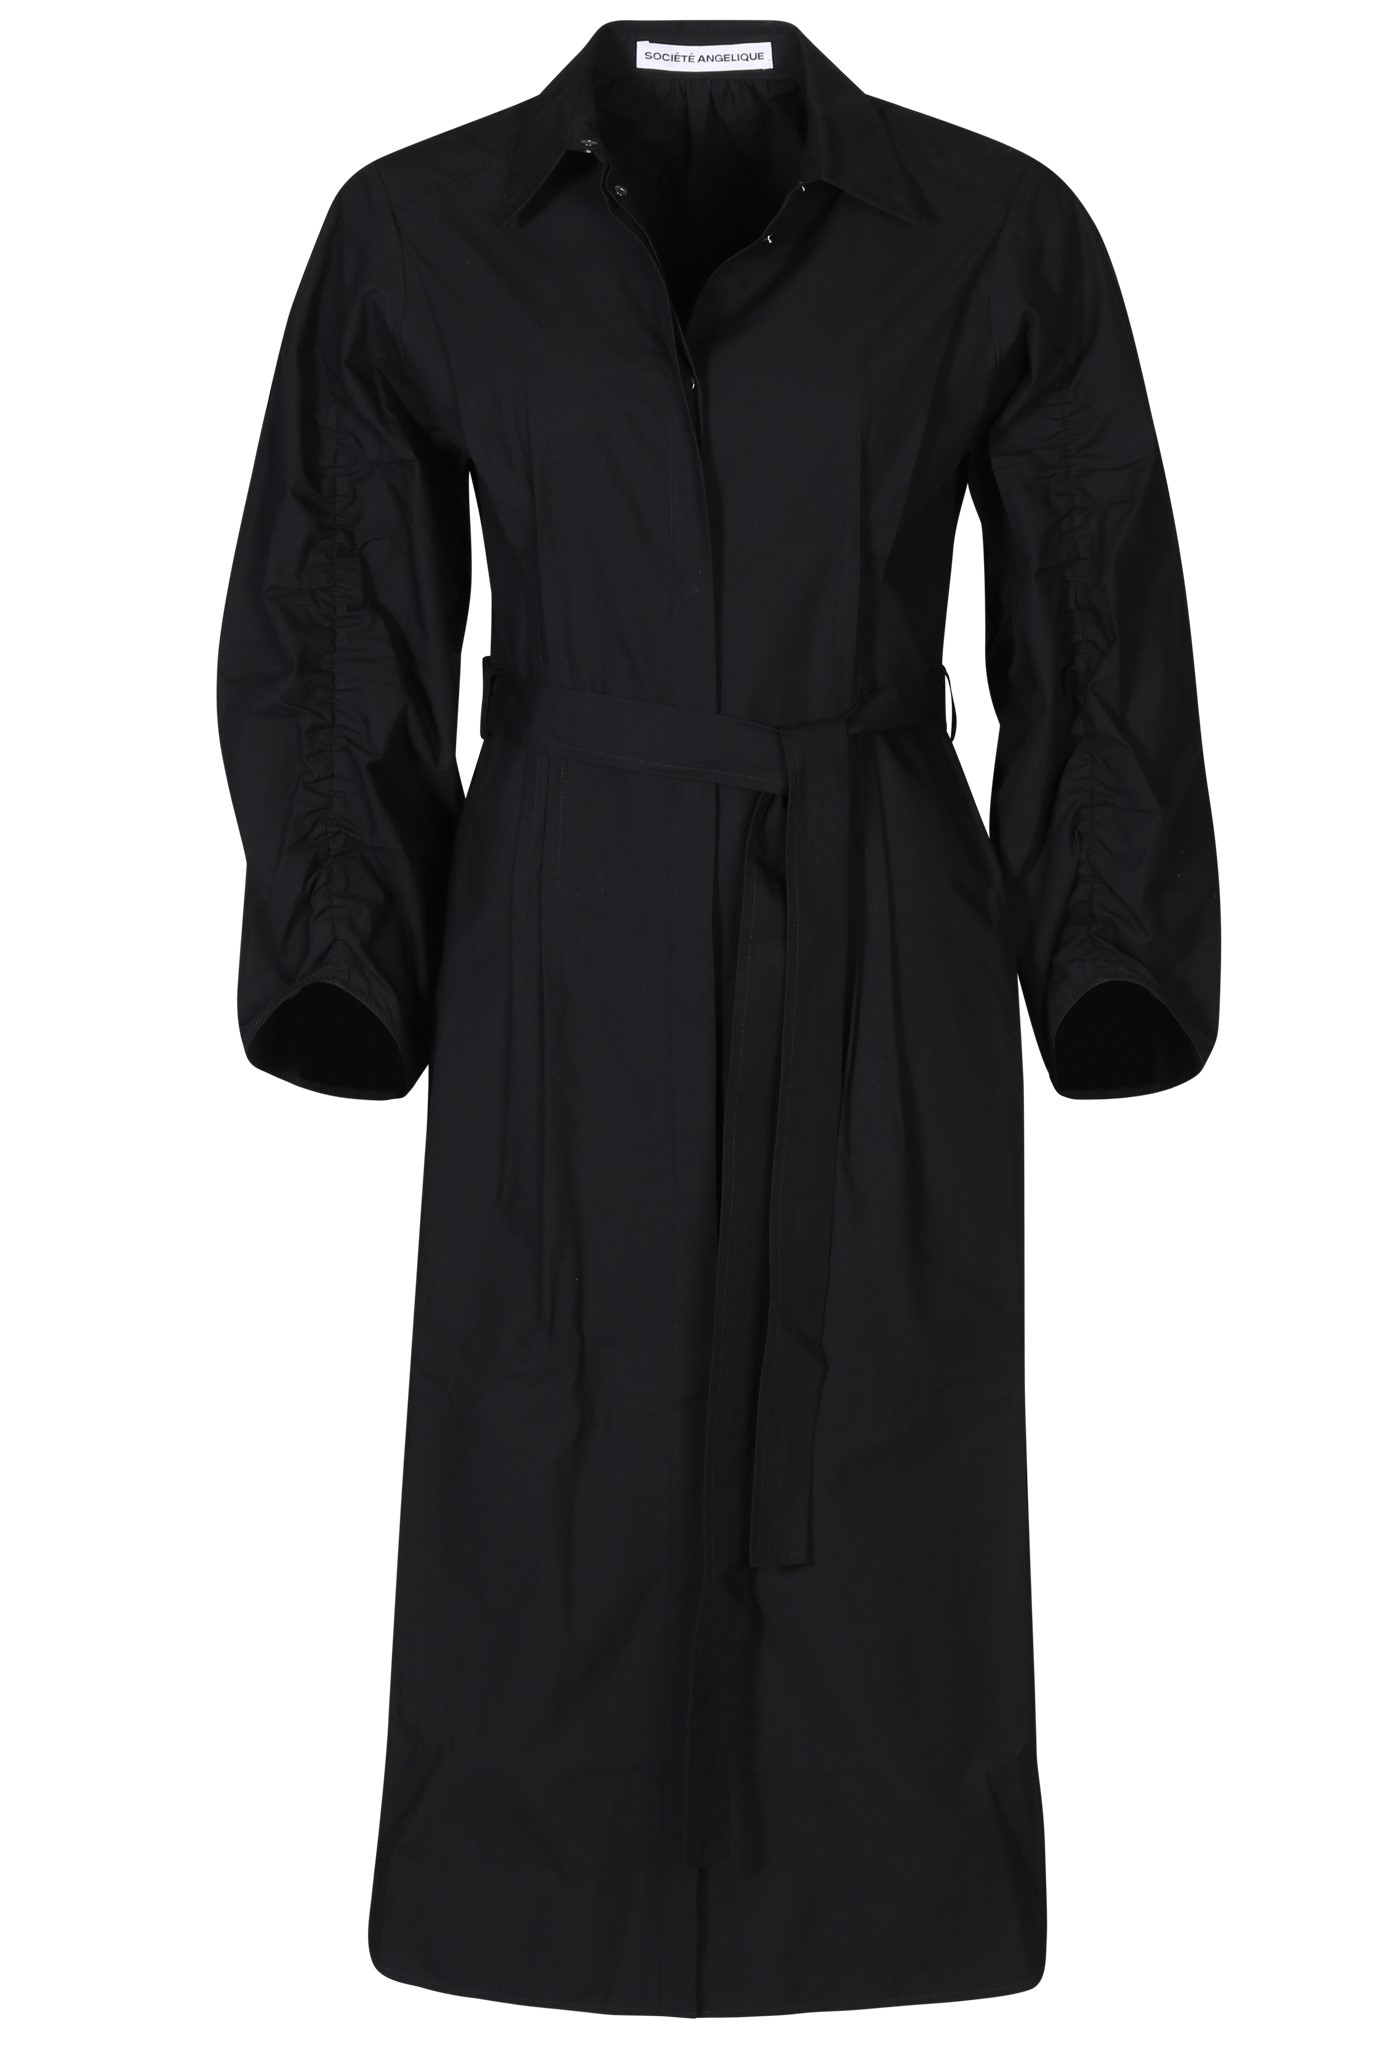 SOCIÉTÉ ANGELIQUE Ana Cotton Dress in Black 36